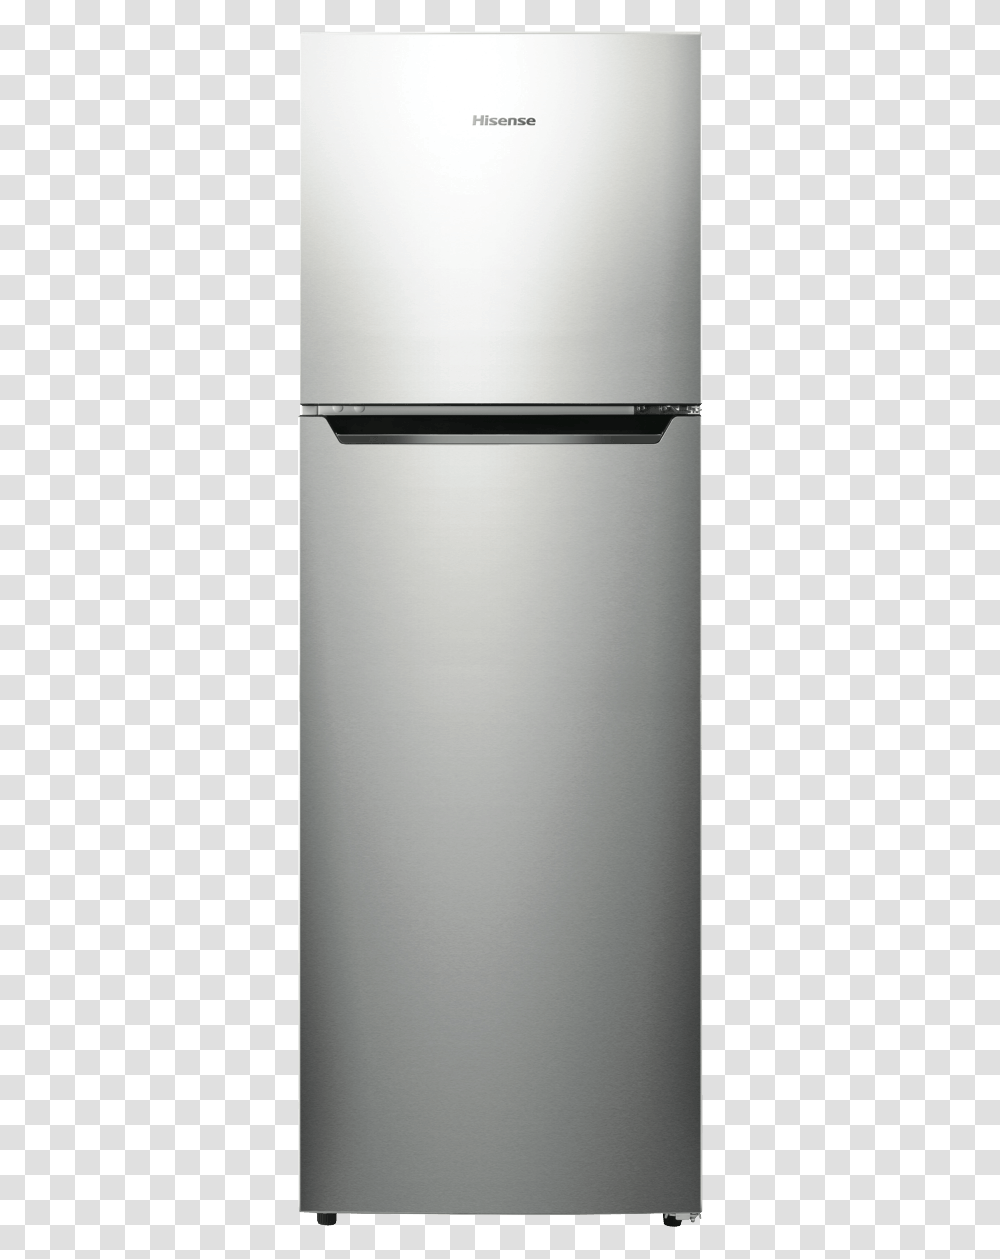 Hisense Hr6tff272s 272l Top Mount Refrigerator, Appliance, Dishwasher Transparent Png